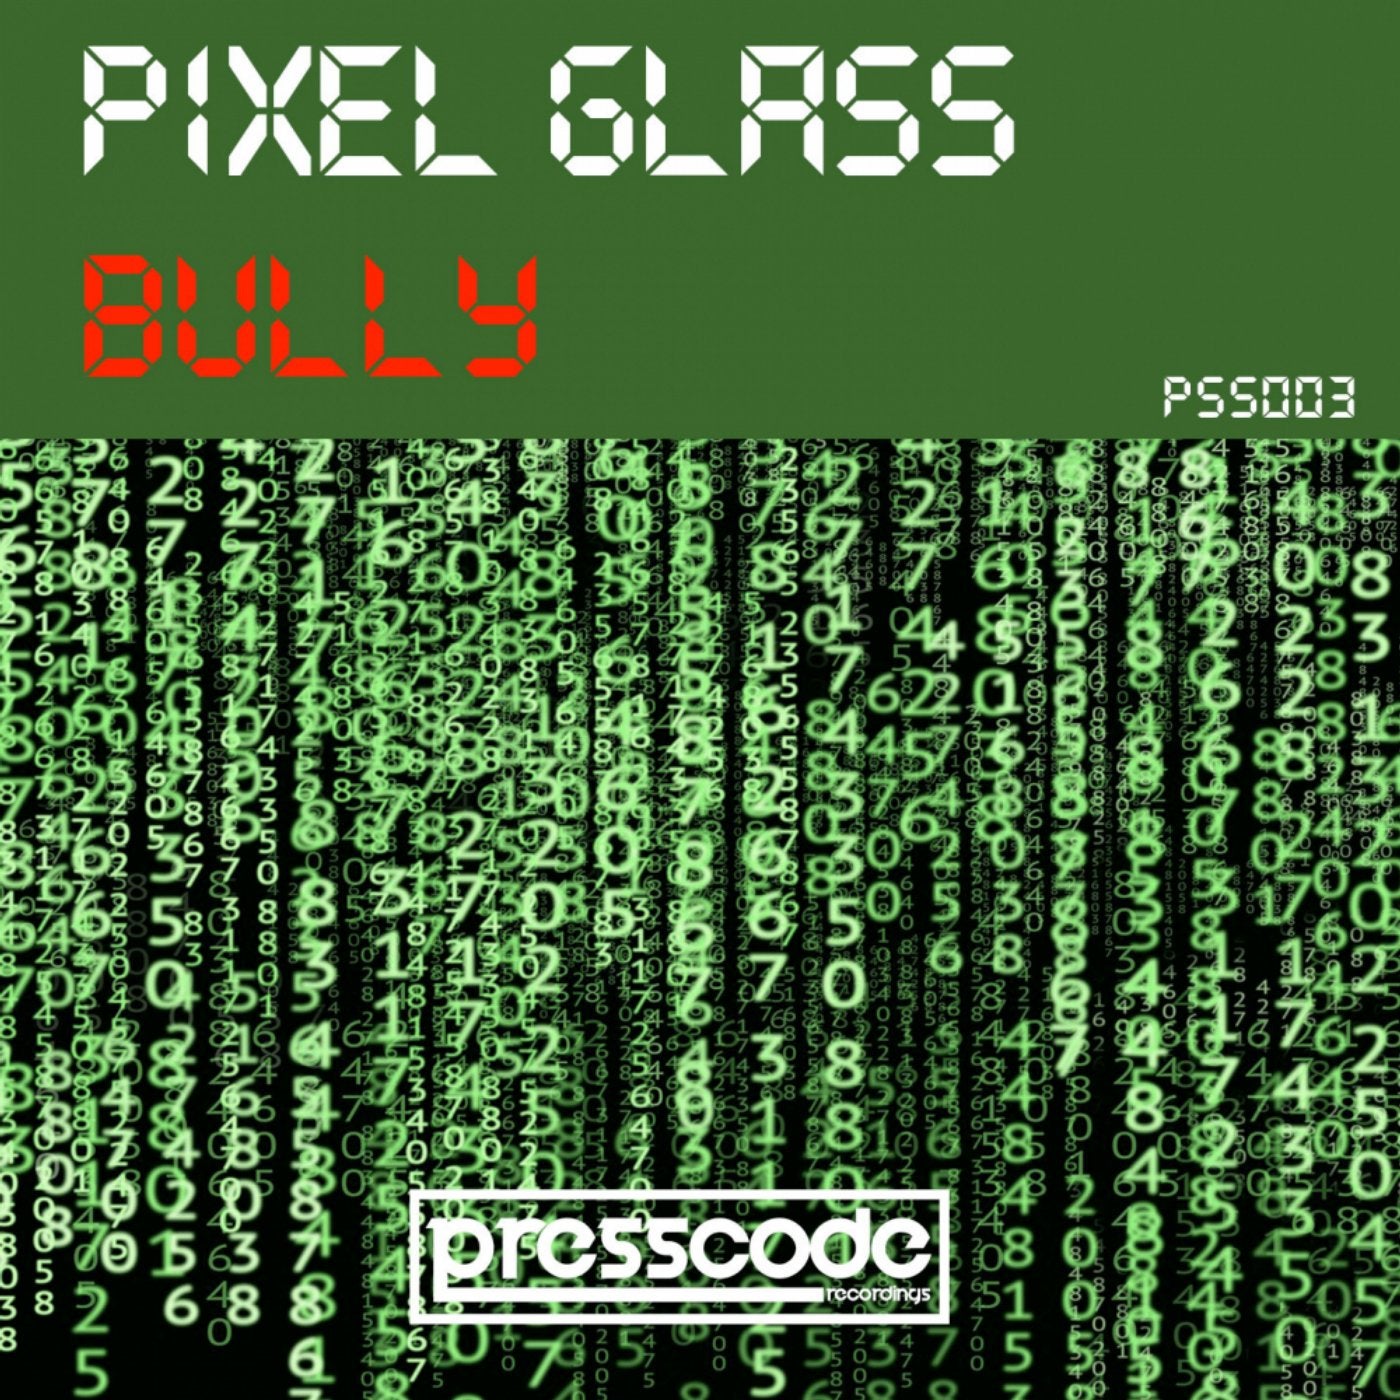 Bully (Matteo Sala Remix)